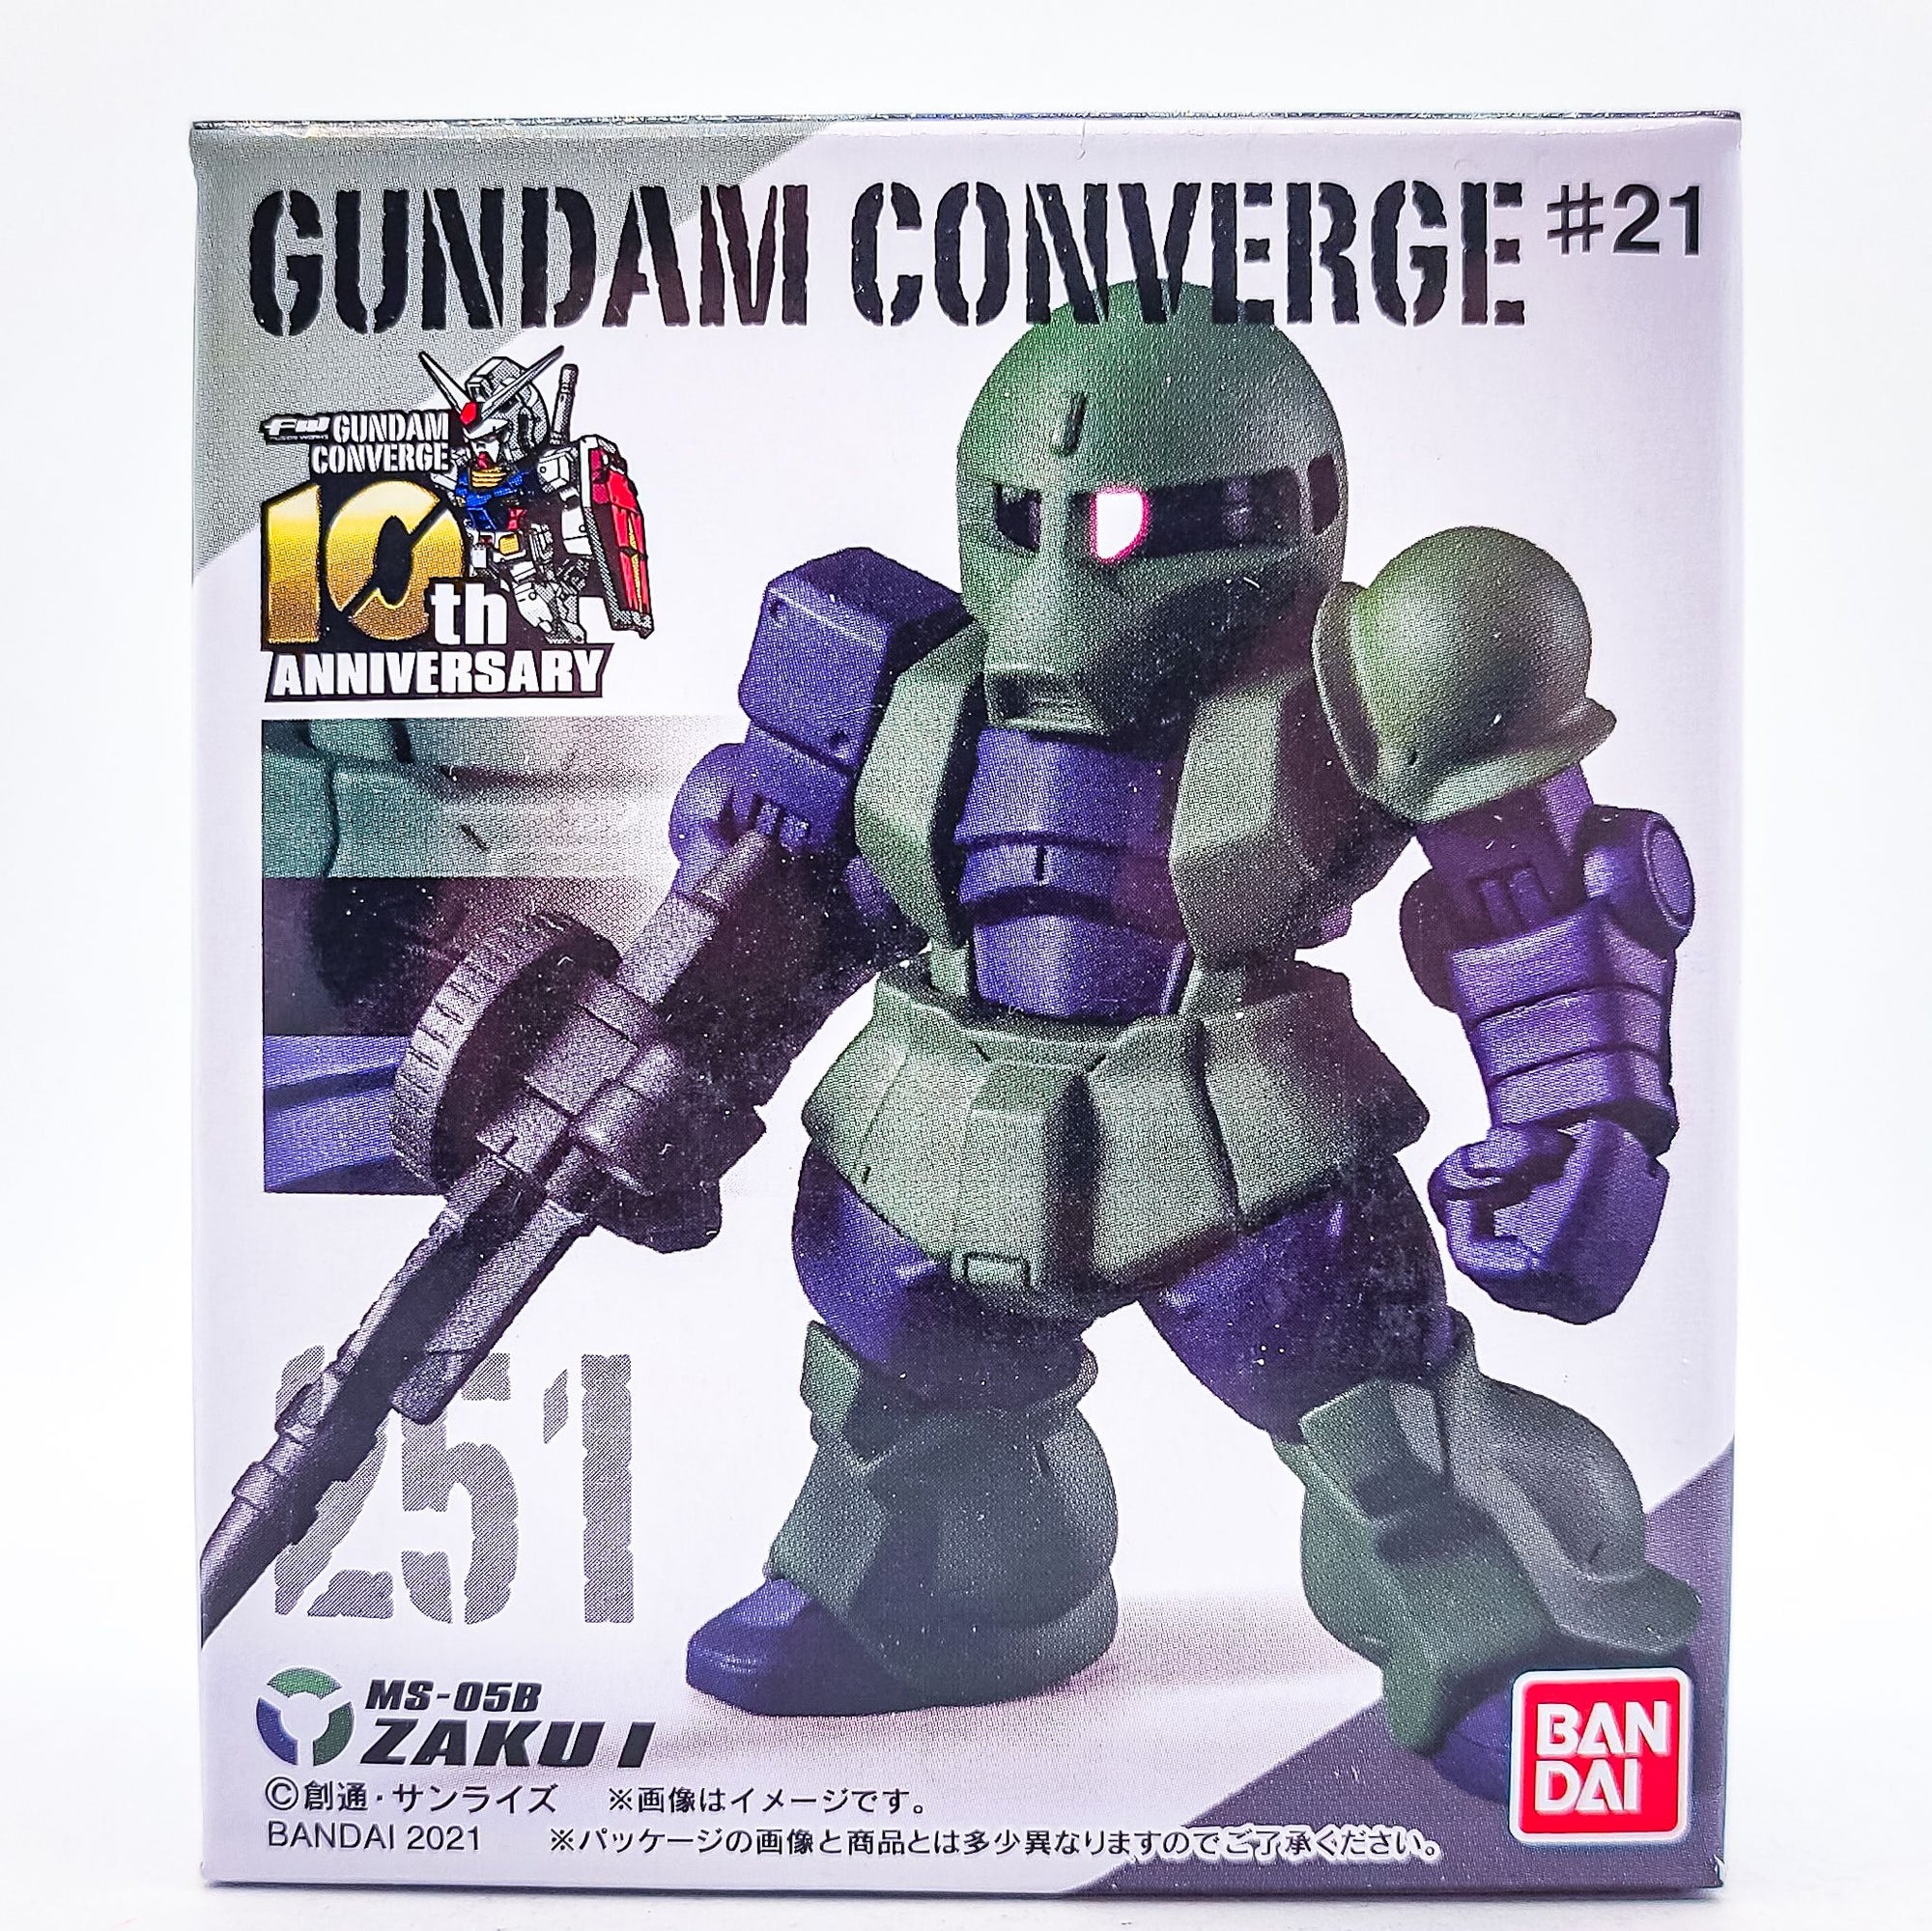 Gundam Converge #251 Zaku I by Bandai - 1